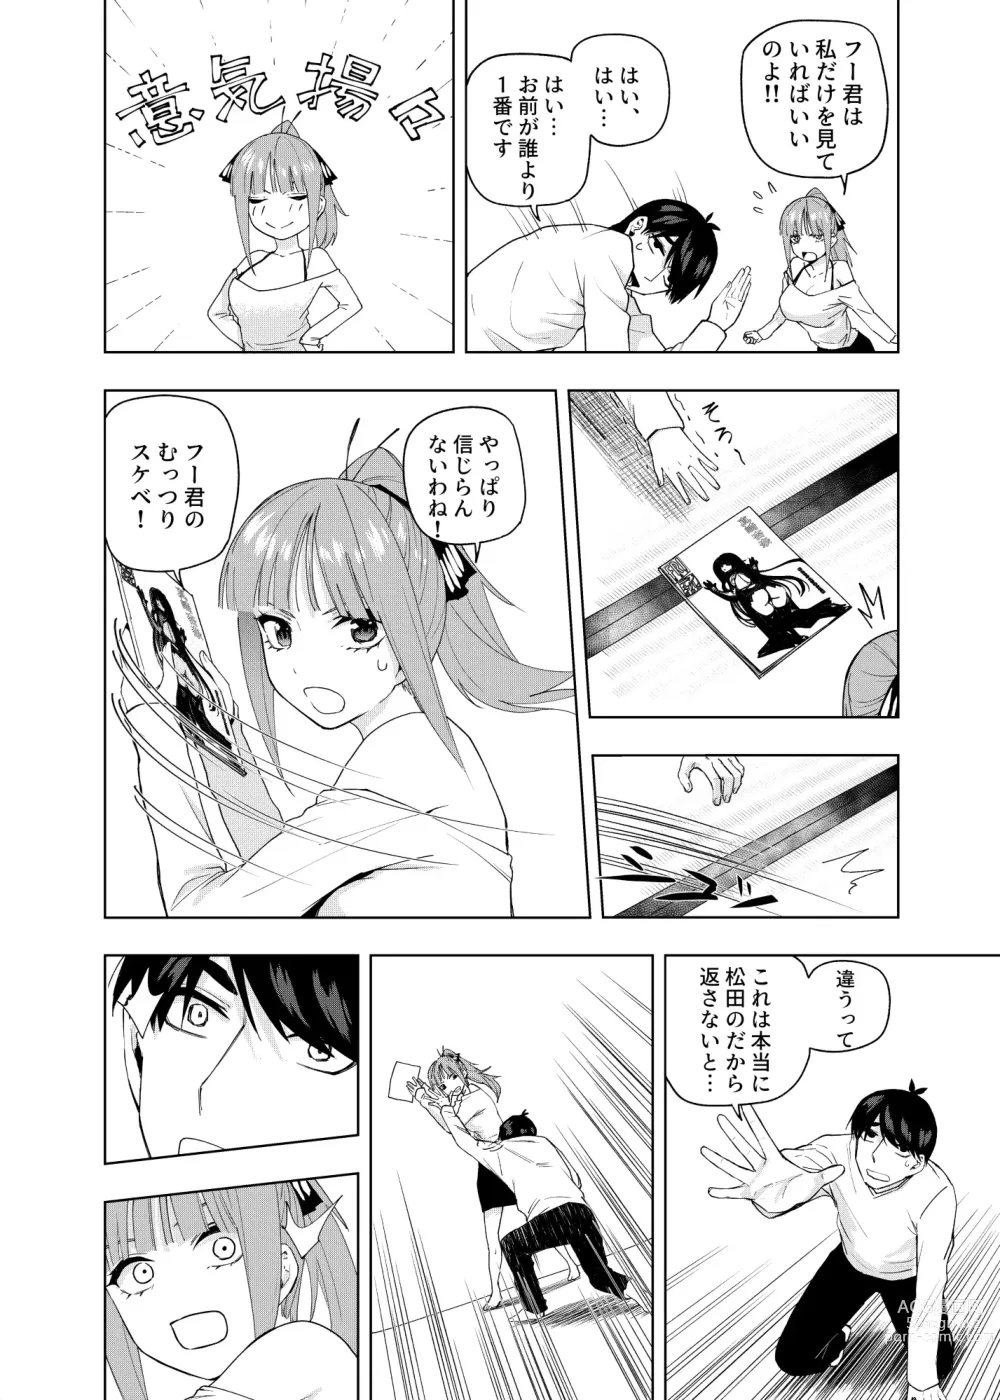 Page 5 of doujinshi Christmas no Ato